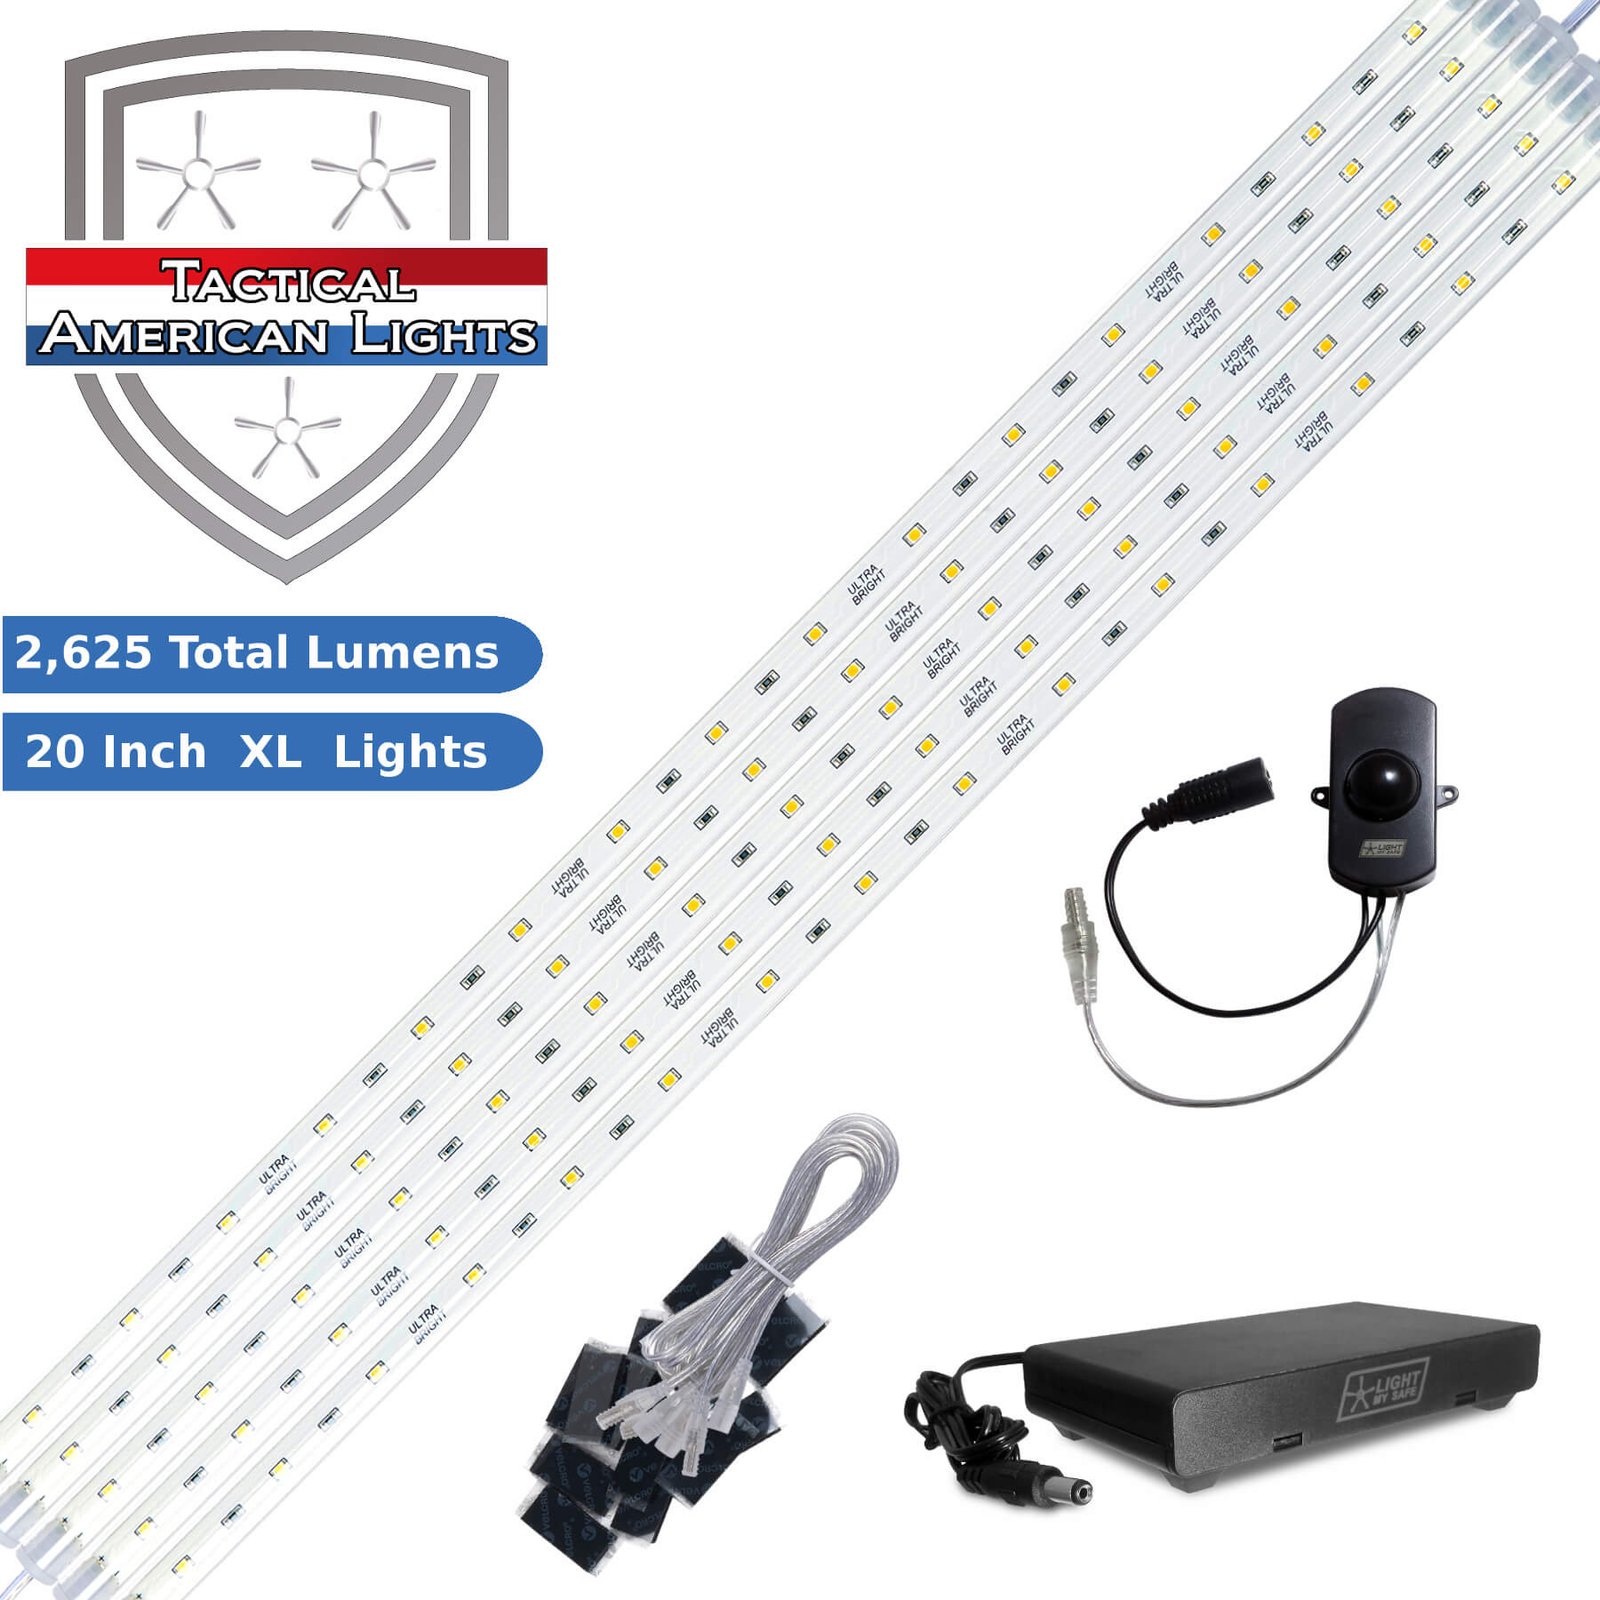 TAC-2625 Vault Lighting Kit for Any Gun Safe